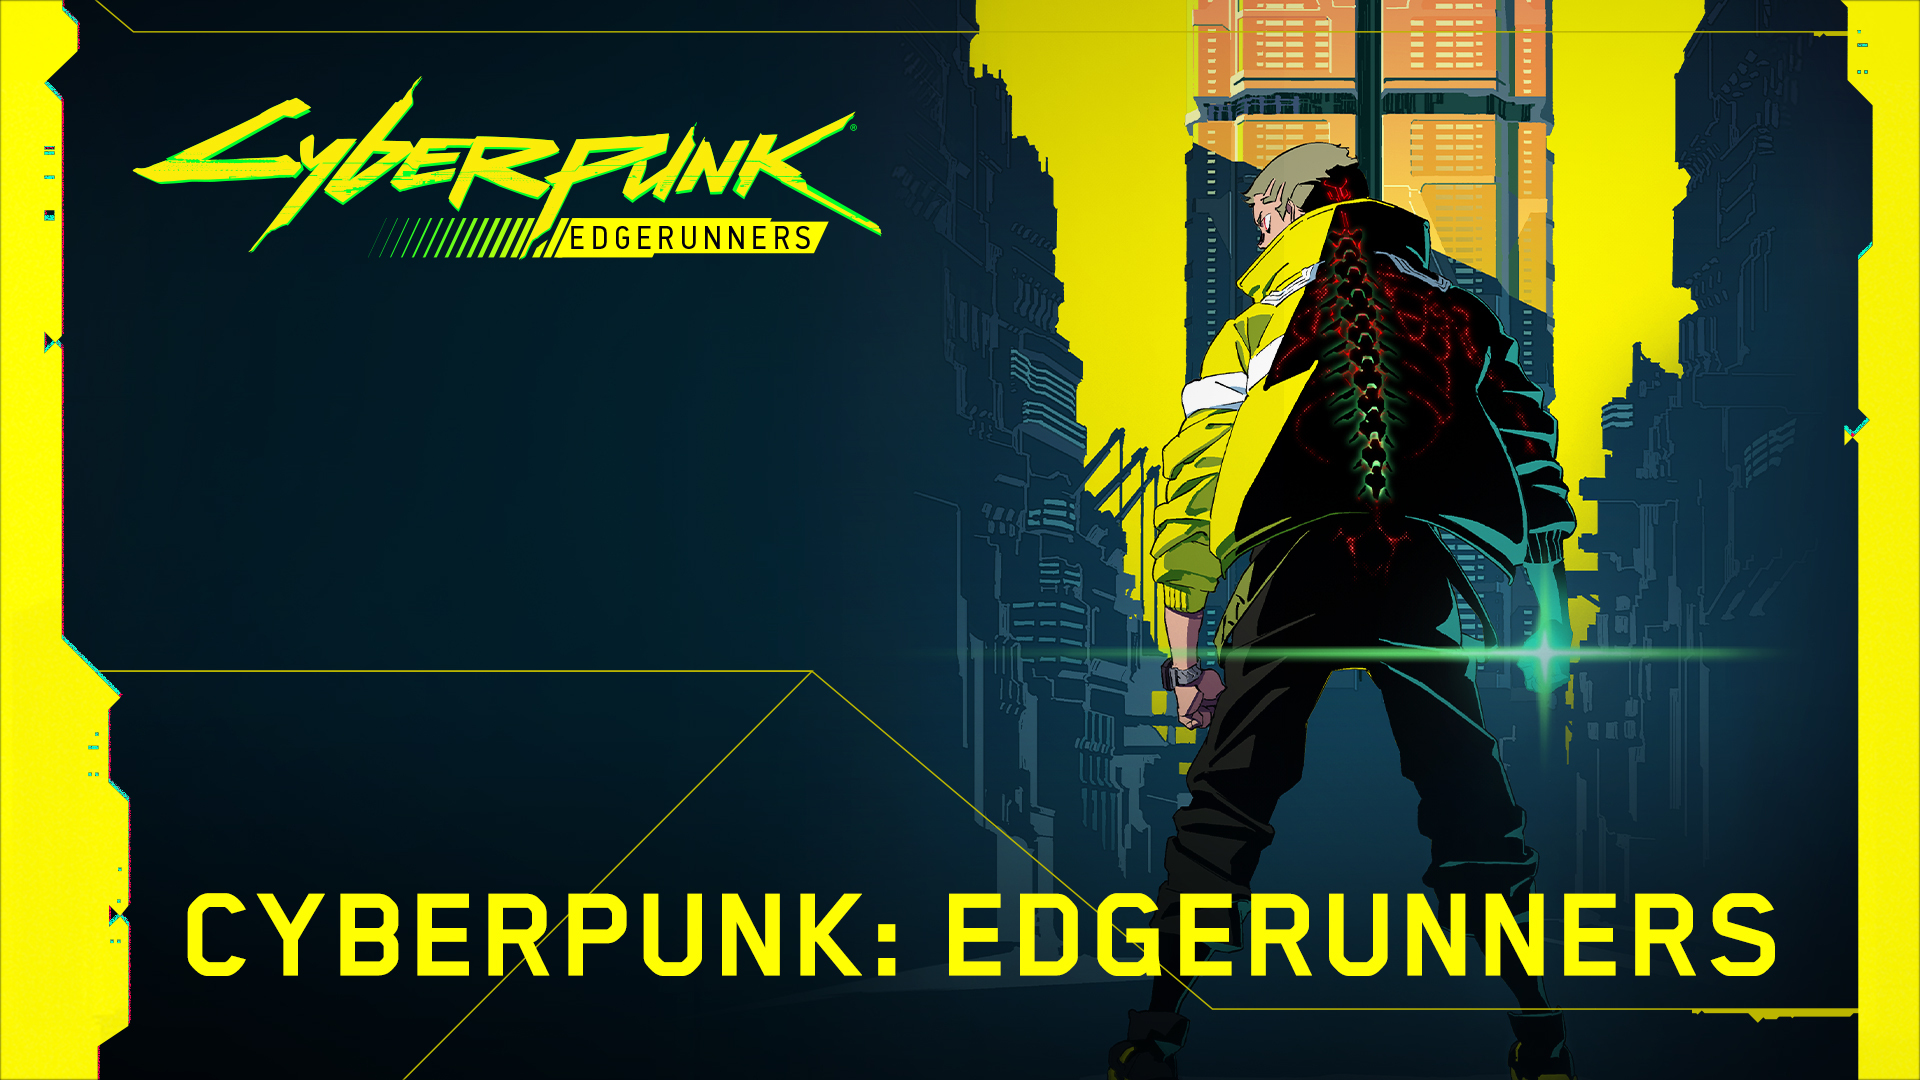 CD Projekt parece sugerir mais conteúdo Cyberpunk do estúdio Edgerunners  Trigger! - NARADIA